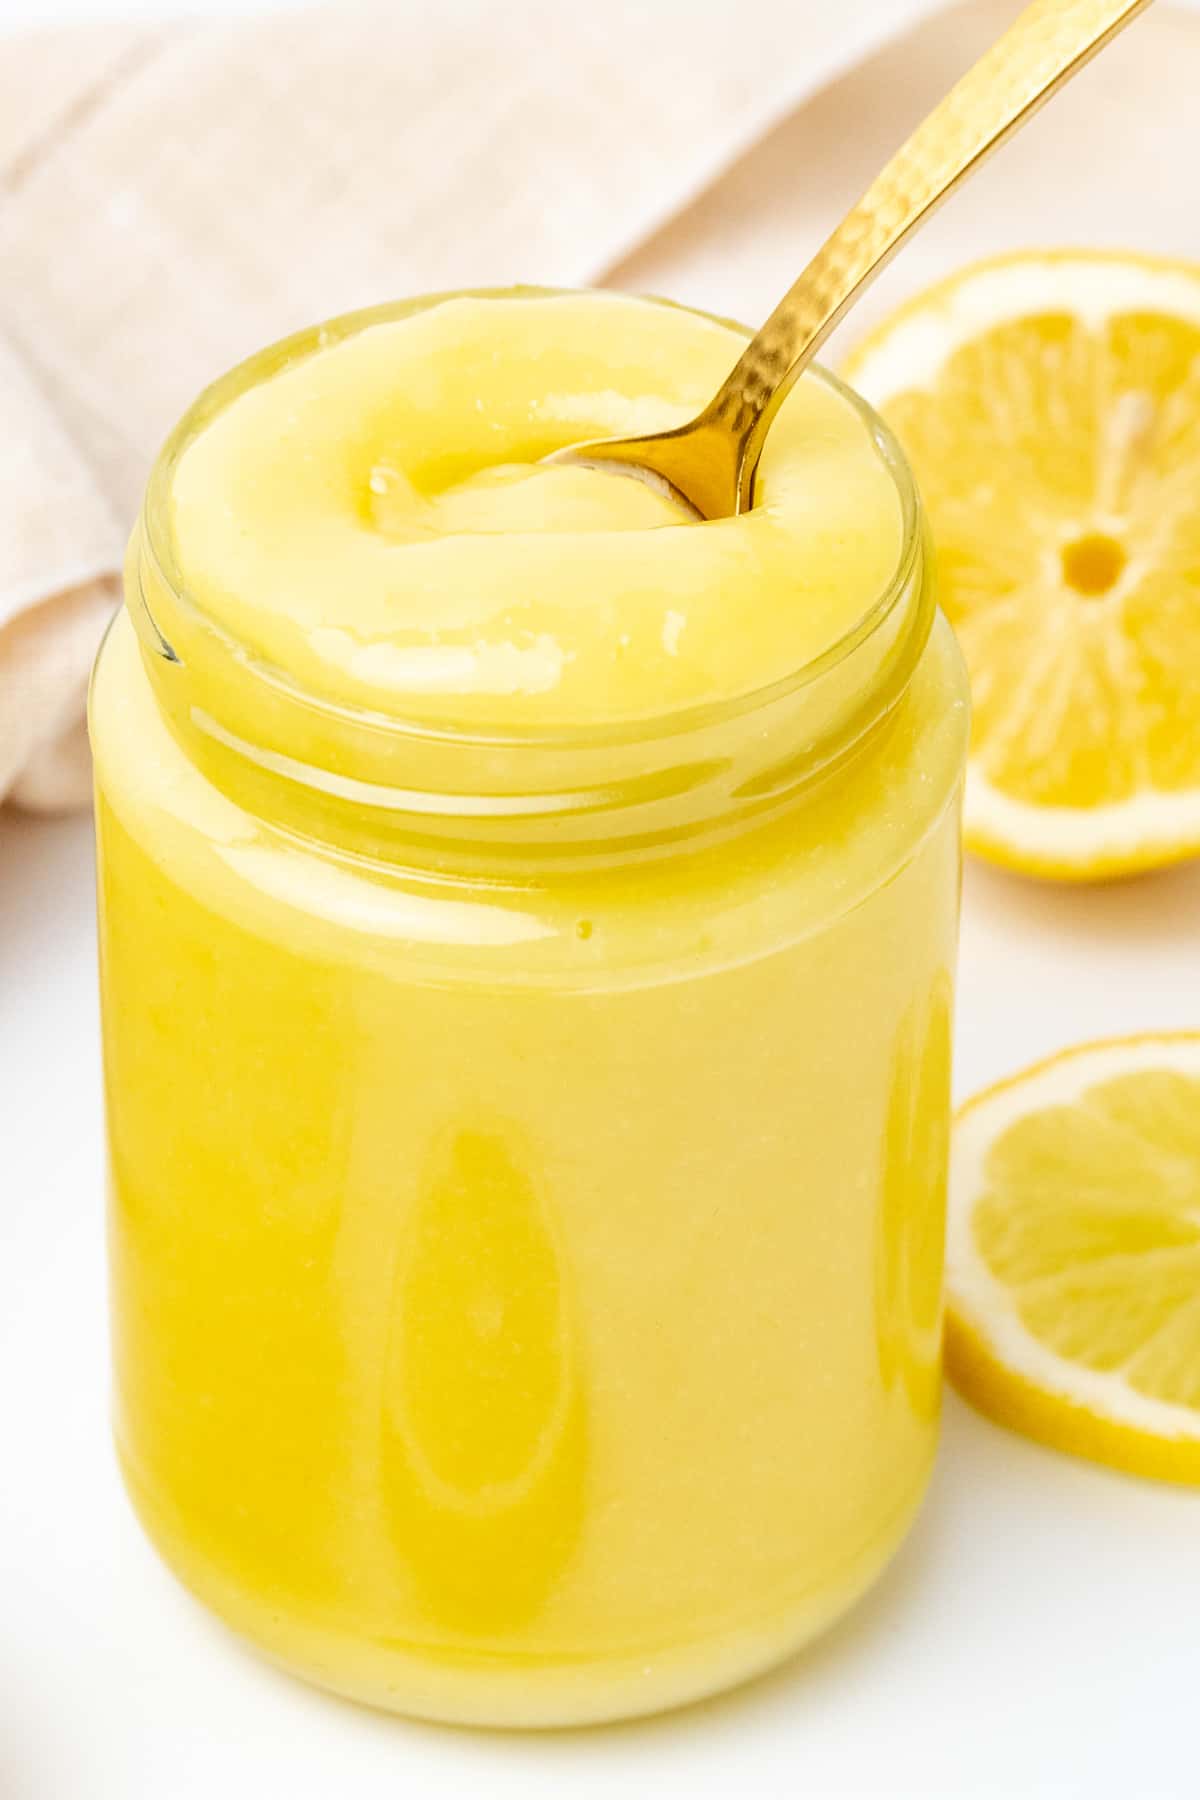 Ένα χρυσό κουταλάκι του γλυκού βυθίζεται σε ένα βάζο με λείο, παχύρρευστο και κρεμώδες τυρόπηγμα λεμονιού.